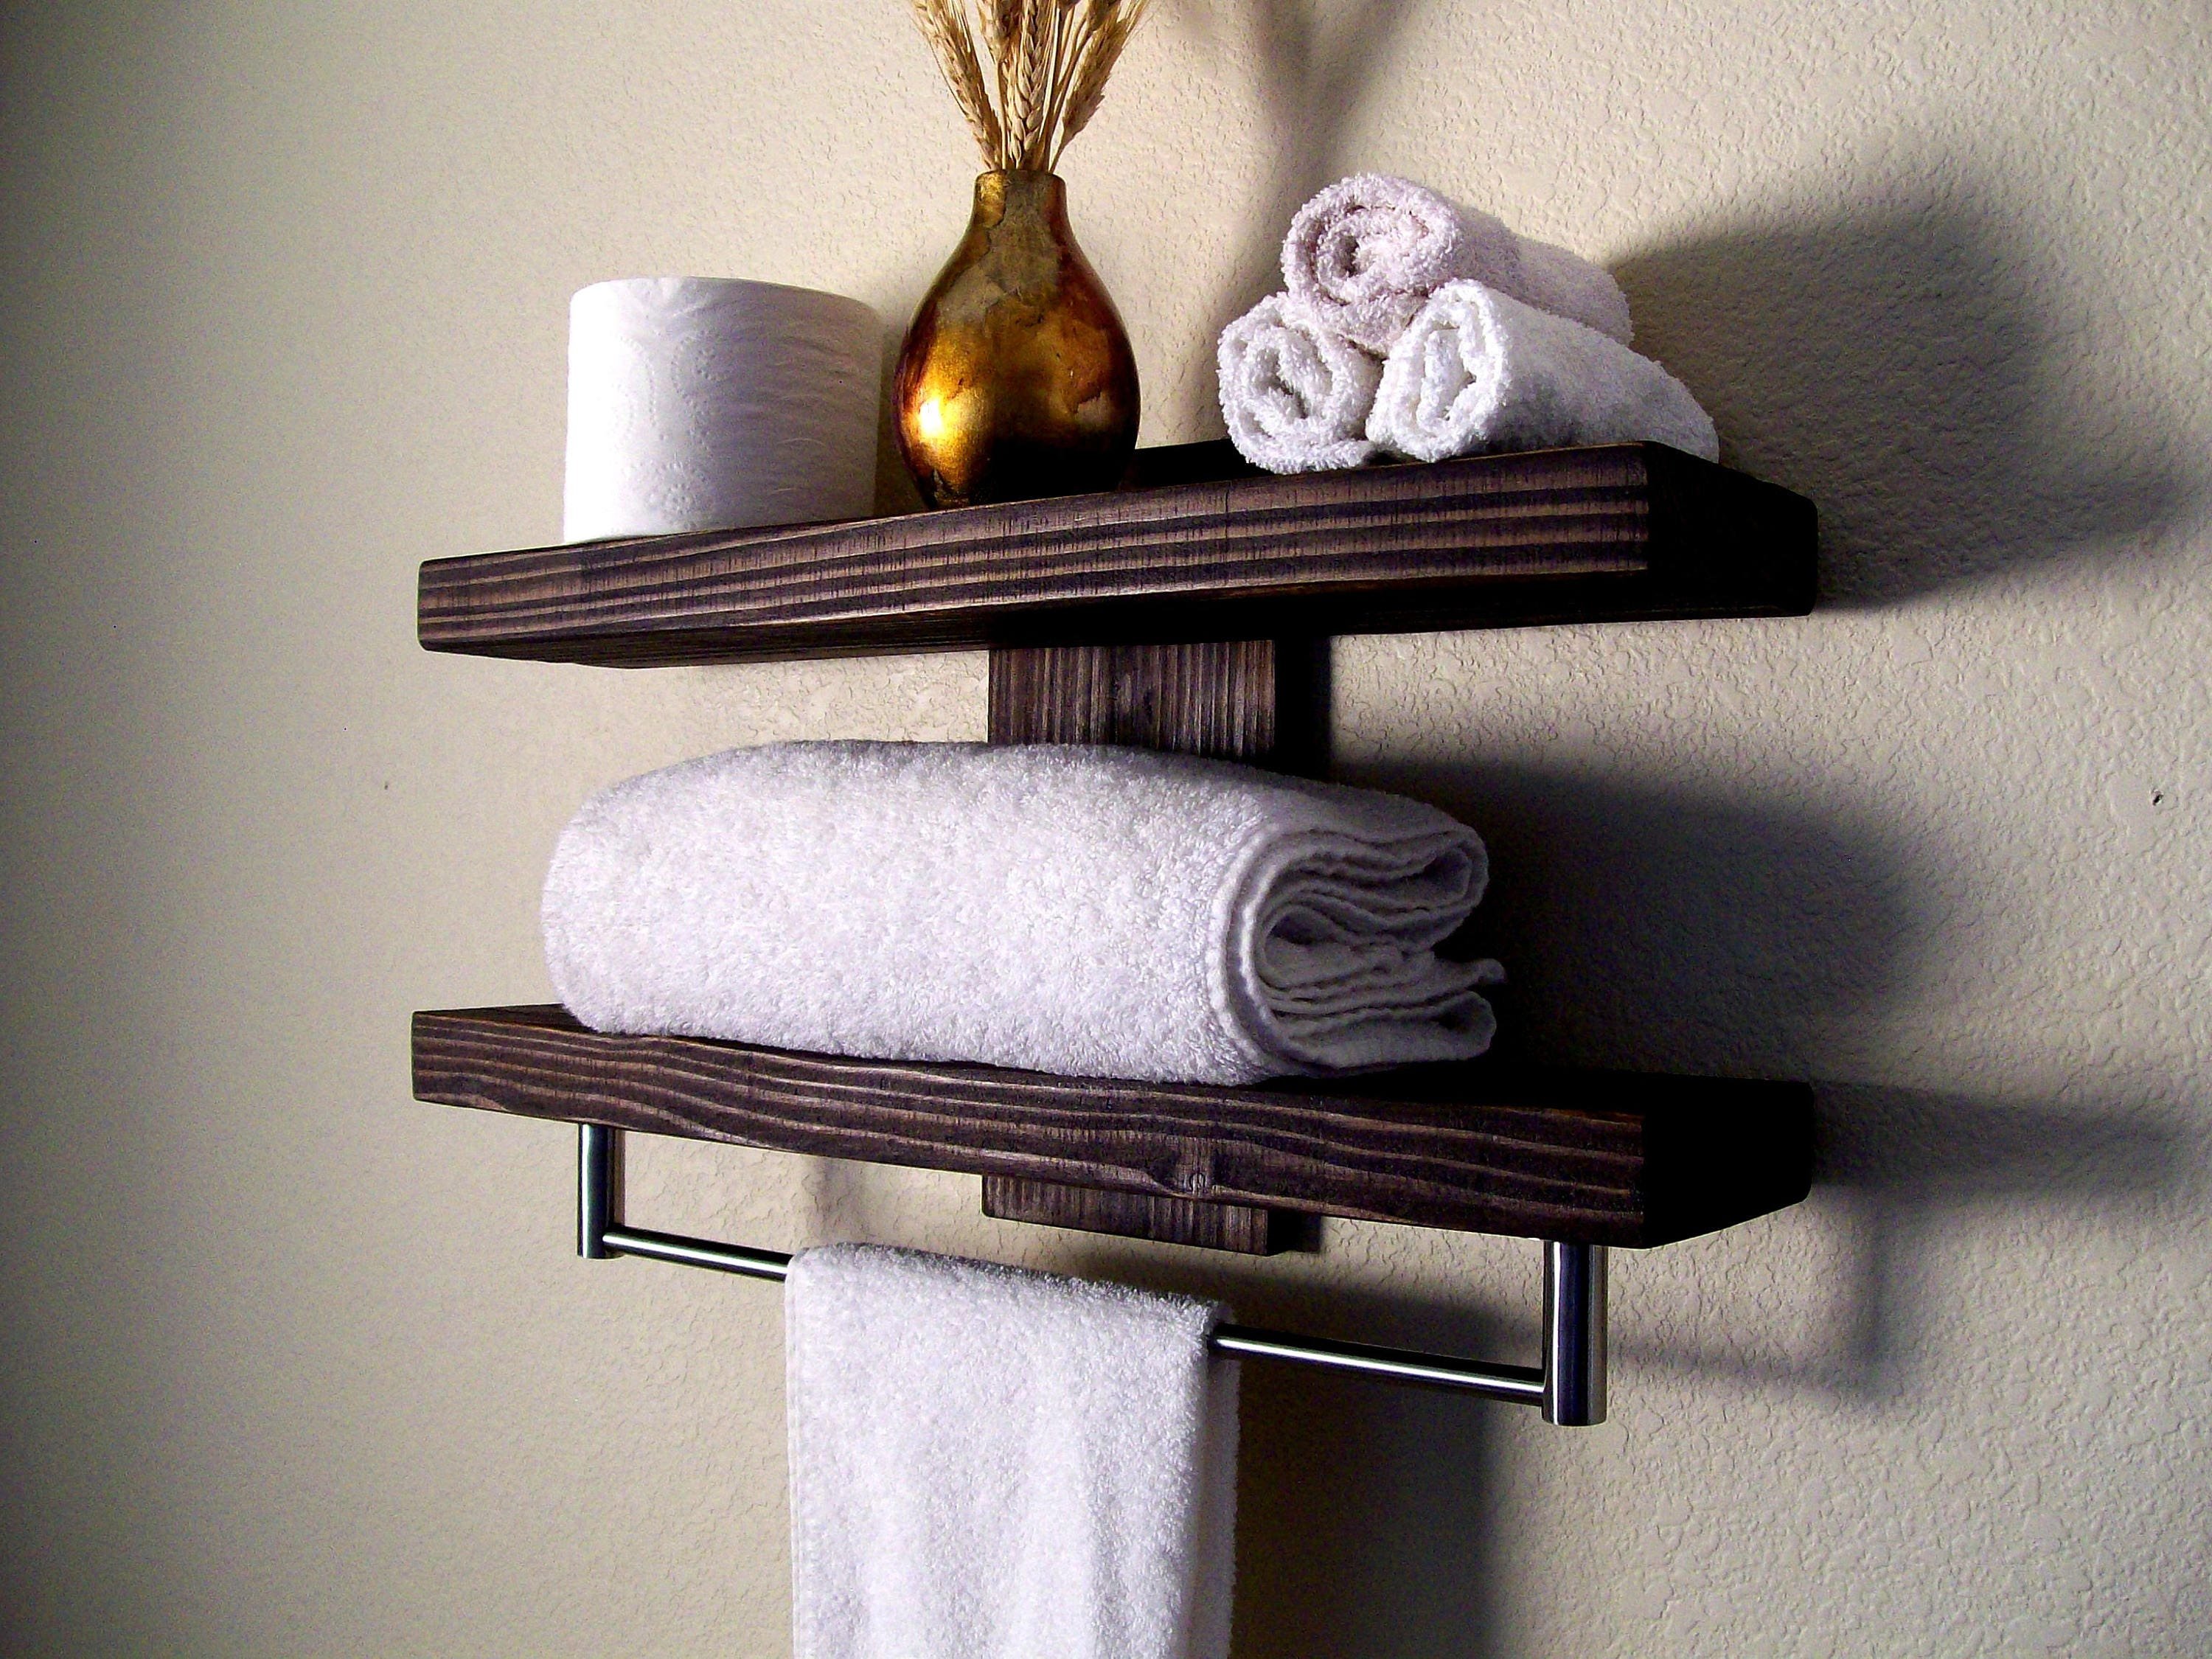 Полотенца трубы. Полки для полотенец в ванную. Полка для полотенец деревянная. Деревянная полка для полотенец в ванную. Полочка в ванну для полотенец.